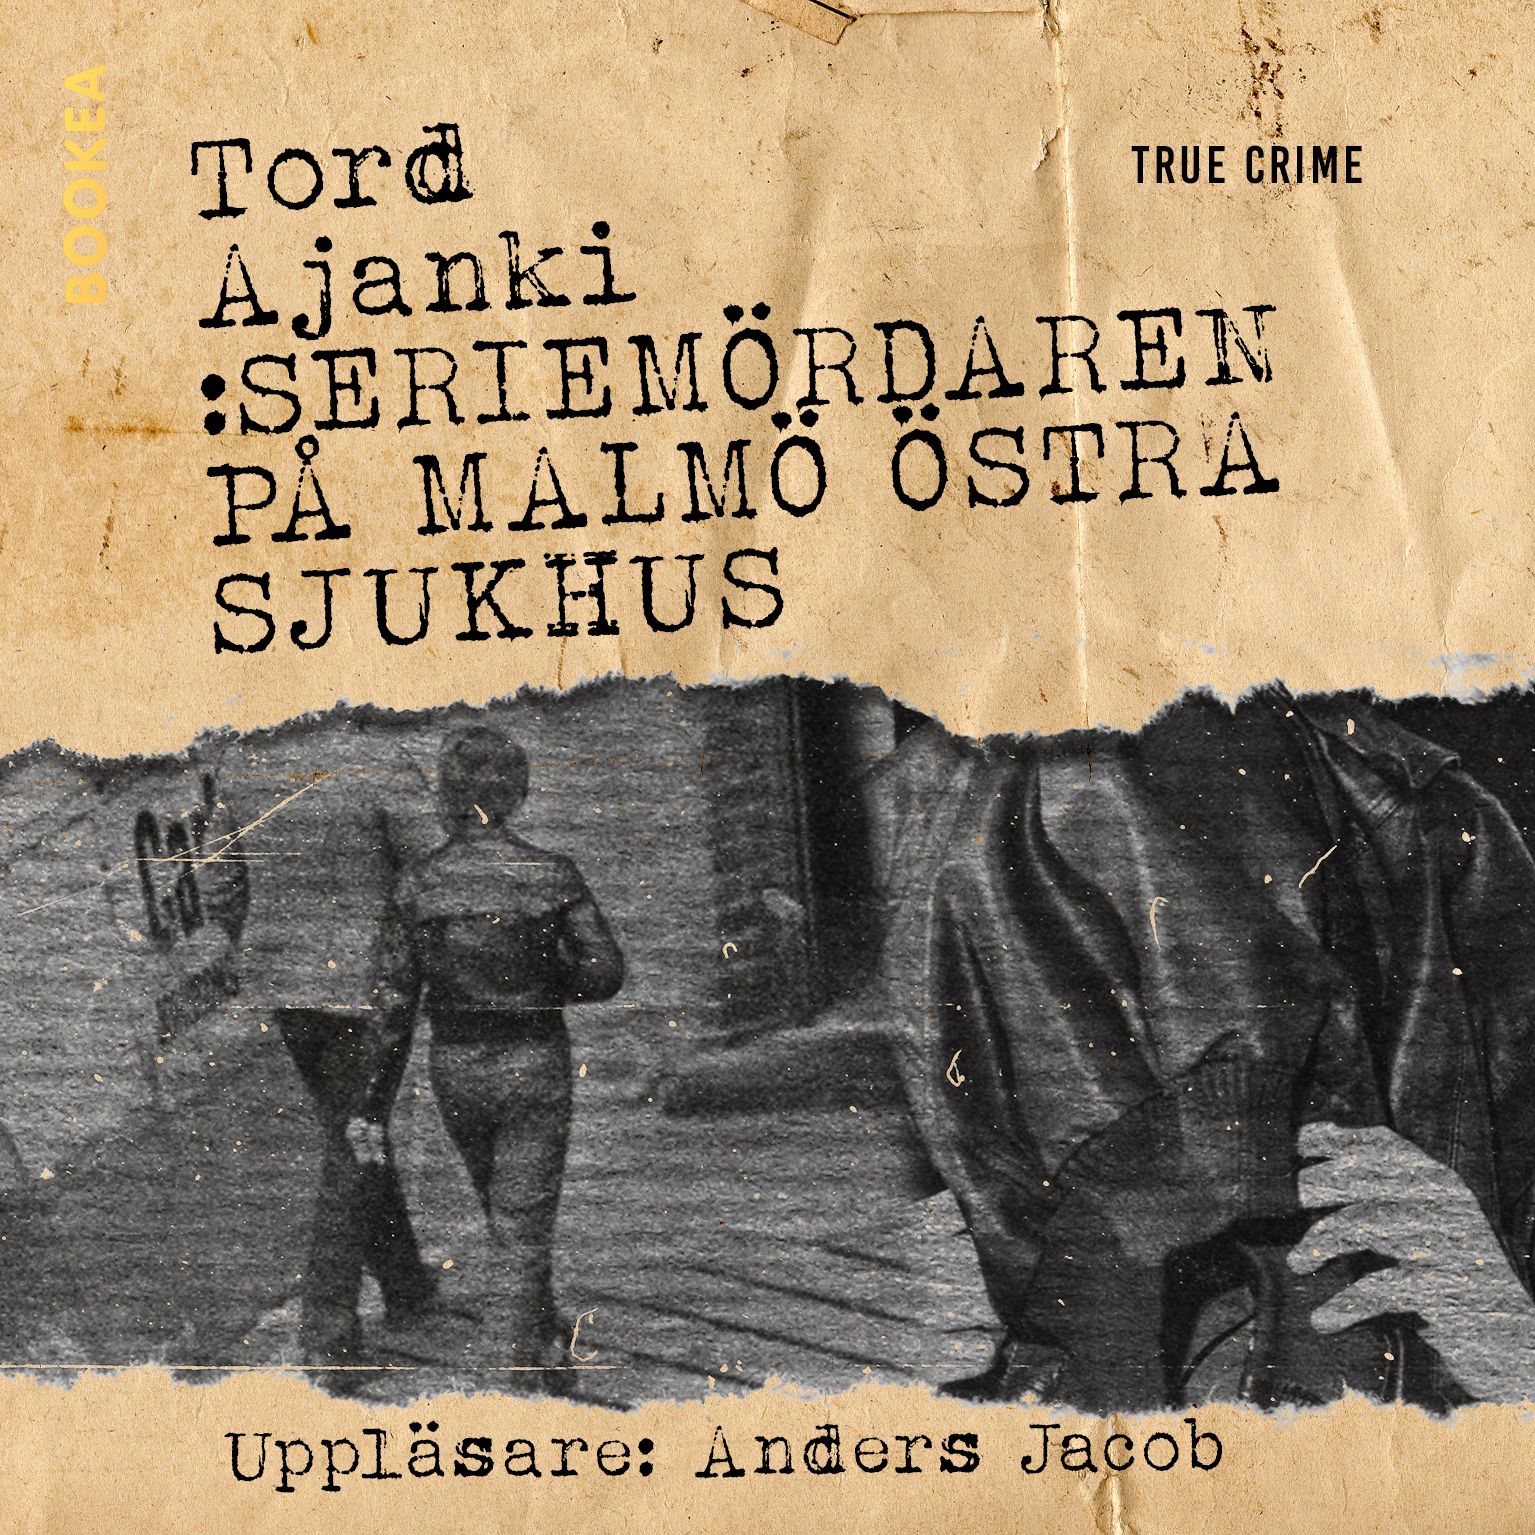 Seriemördaren på Malmö östra sjukhus, ljudbok av Tord Ajanki